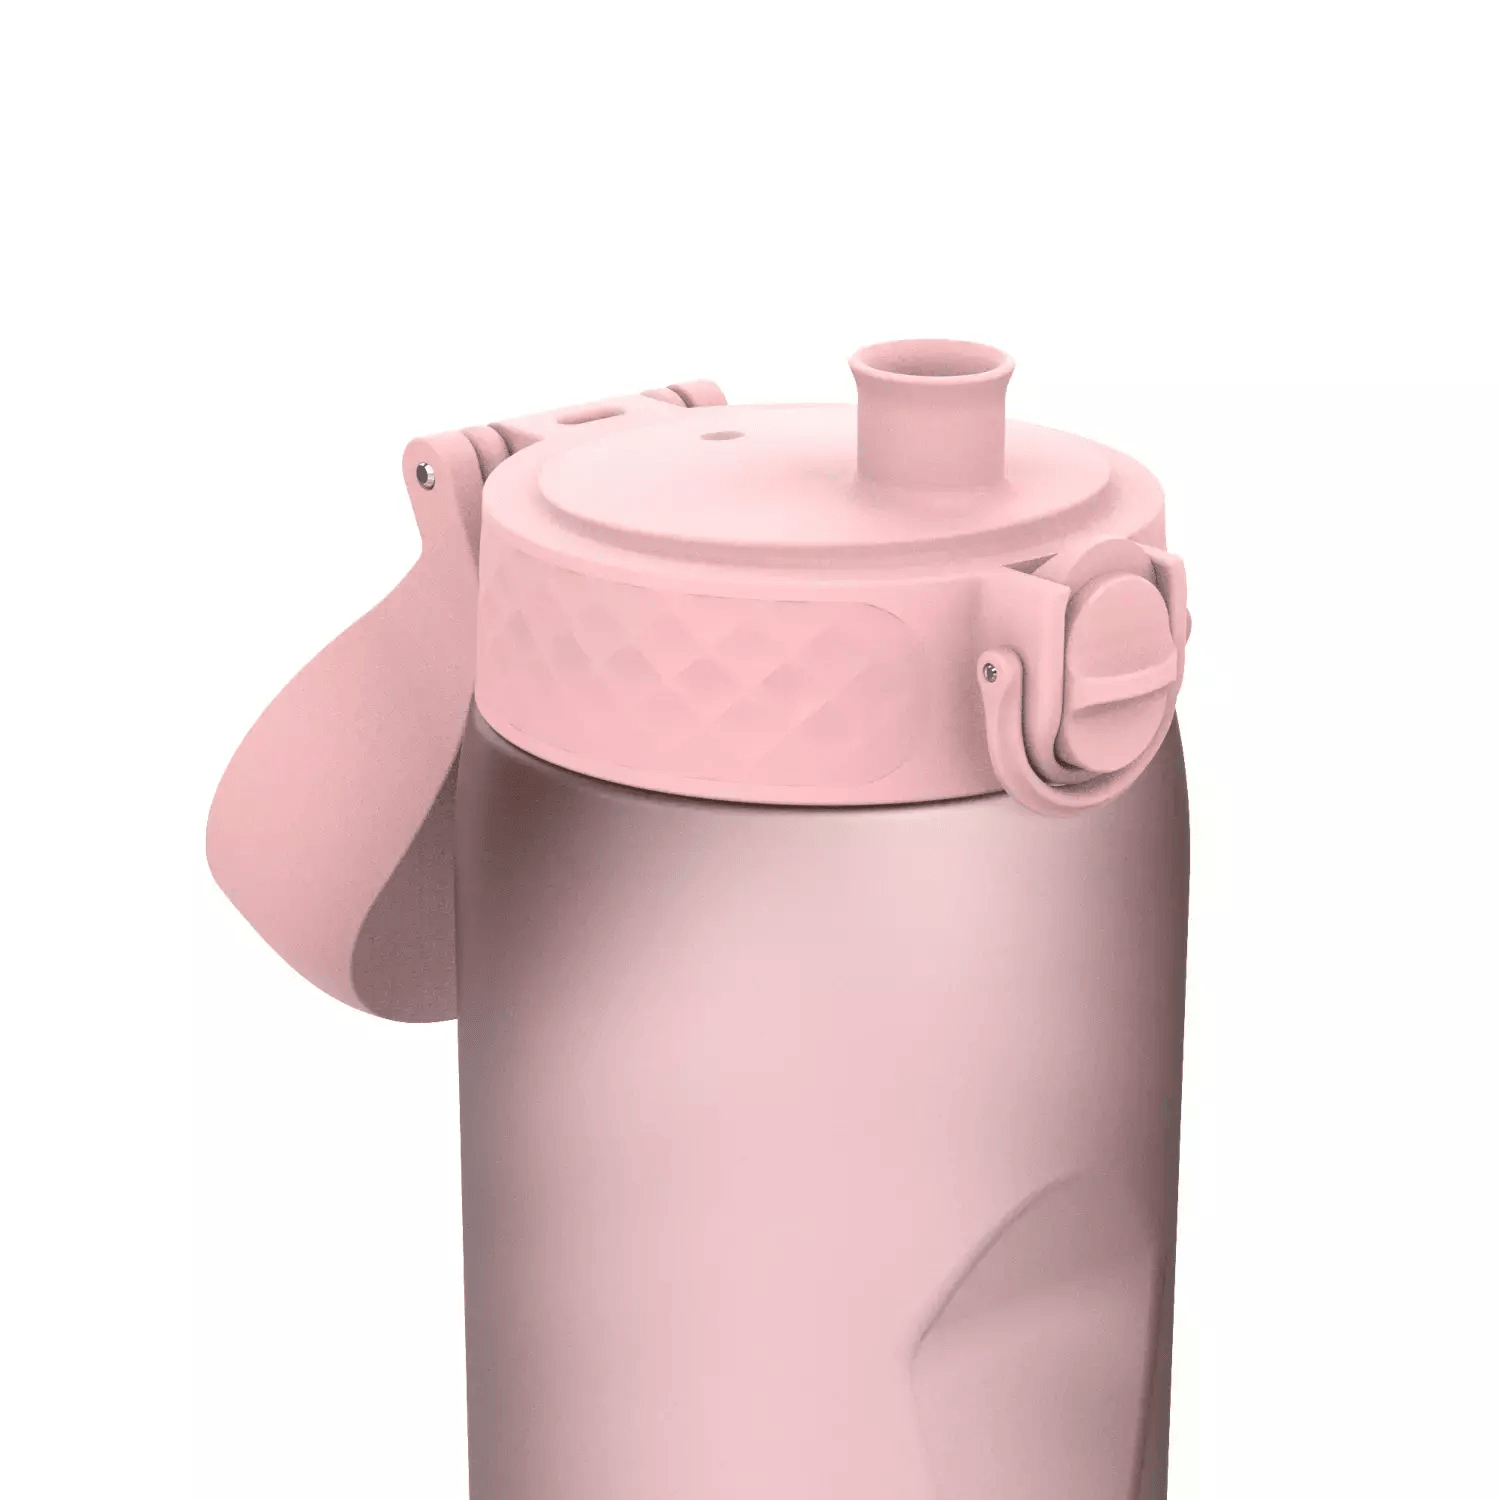 Ion8: Fľaša na vodu z ružového kremeňa s odmerkou šálkou 1100 ml